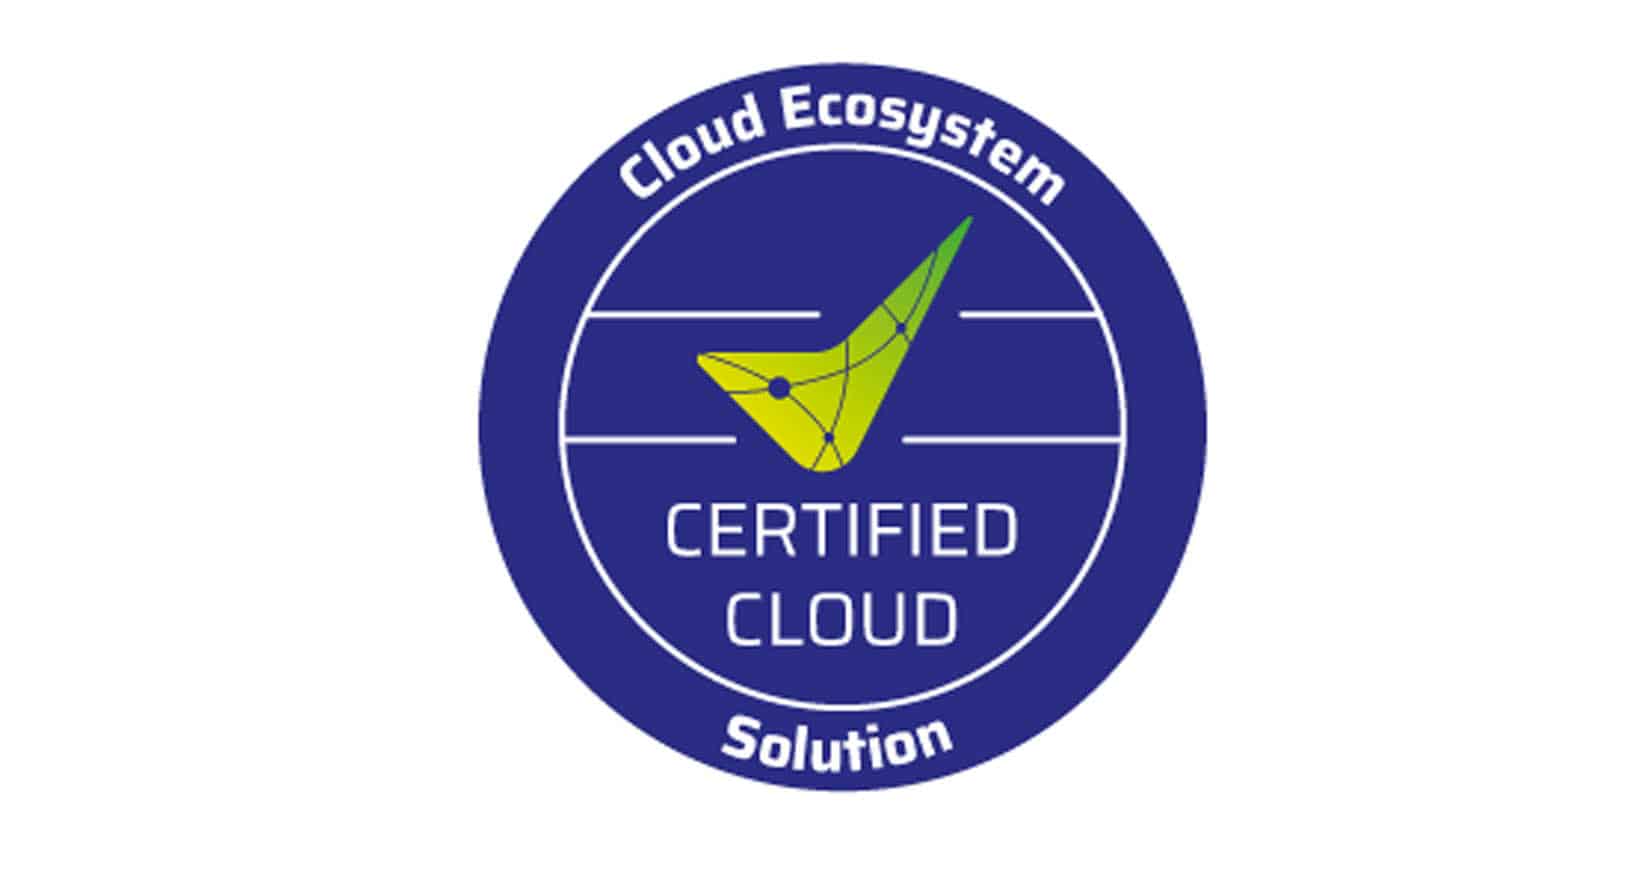 ZEP – Zeiterfassung für Projekte erneut erfolgreich als Certified Cloud beim Cloud Ecosystem zertifiziert